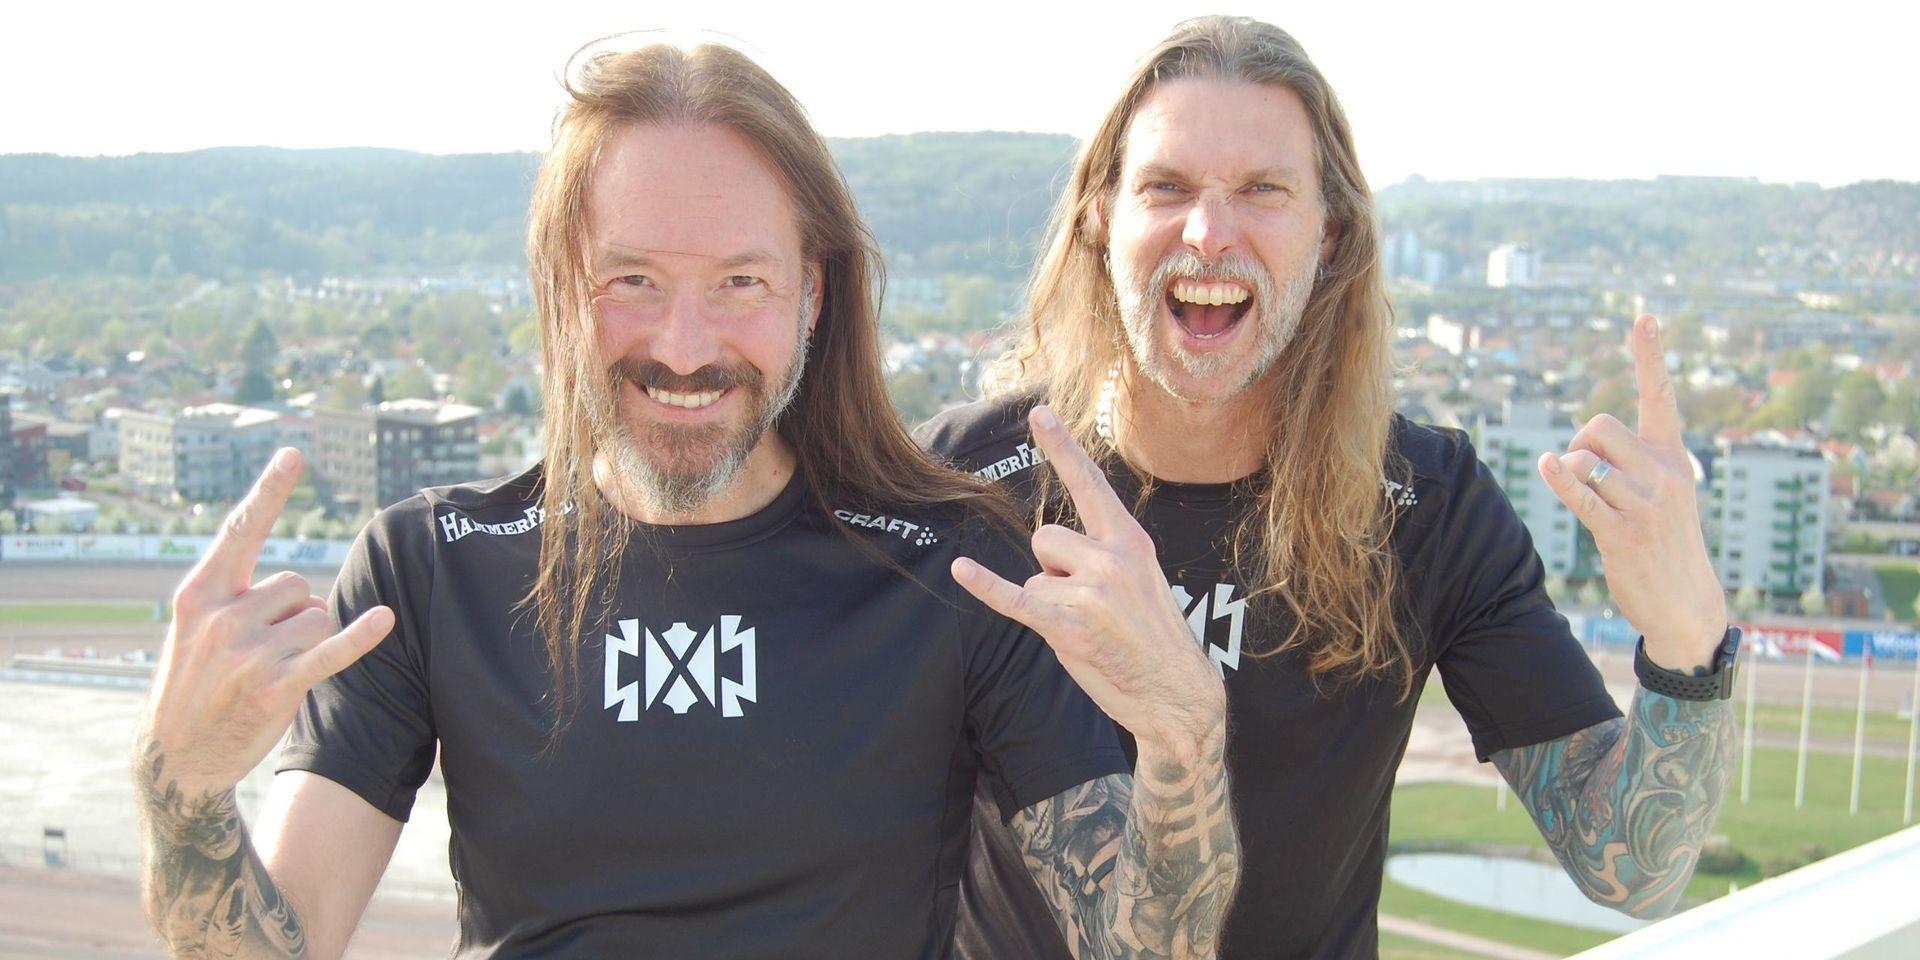 Hammerfalls sångare Joacim Cans och basist Fredrik Larsson ser så där lite lagom farliga ut: långt hår, massor av tatueringar och på scenen dessutom utrustade med de attiraljer som hör den internationella heavy-metal-scenen till. På lördag ger dom järnet i Göteborgsvarvet.